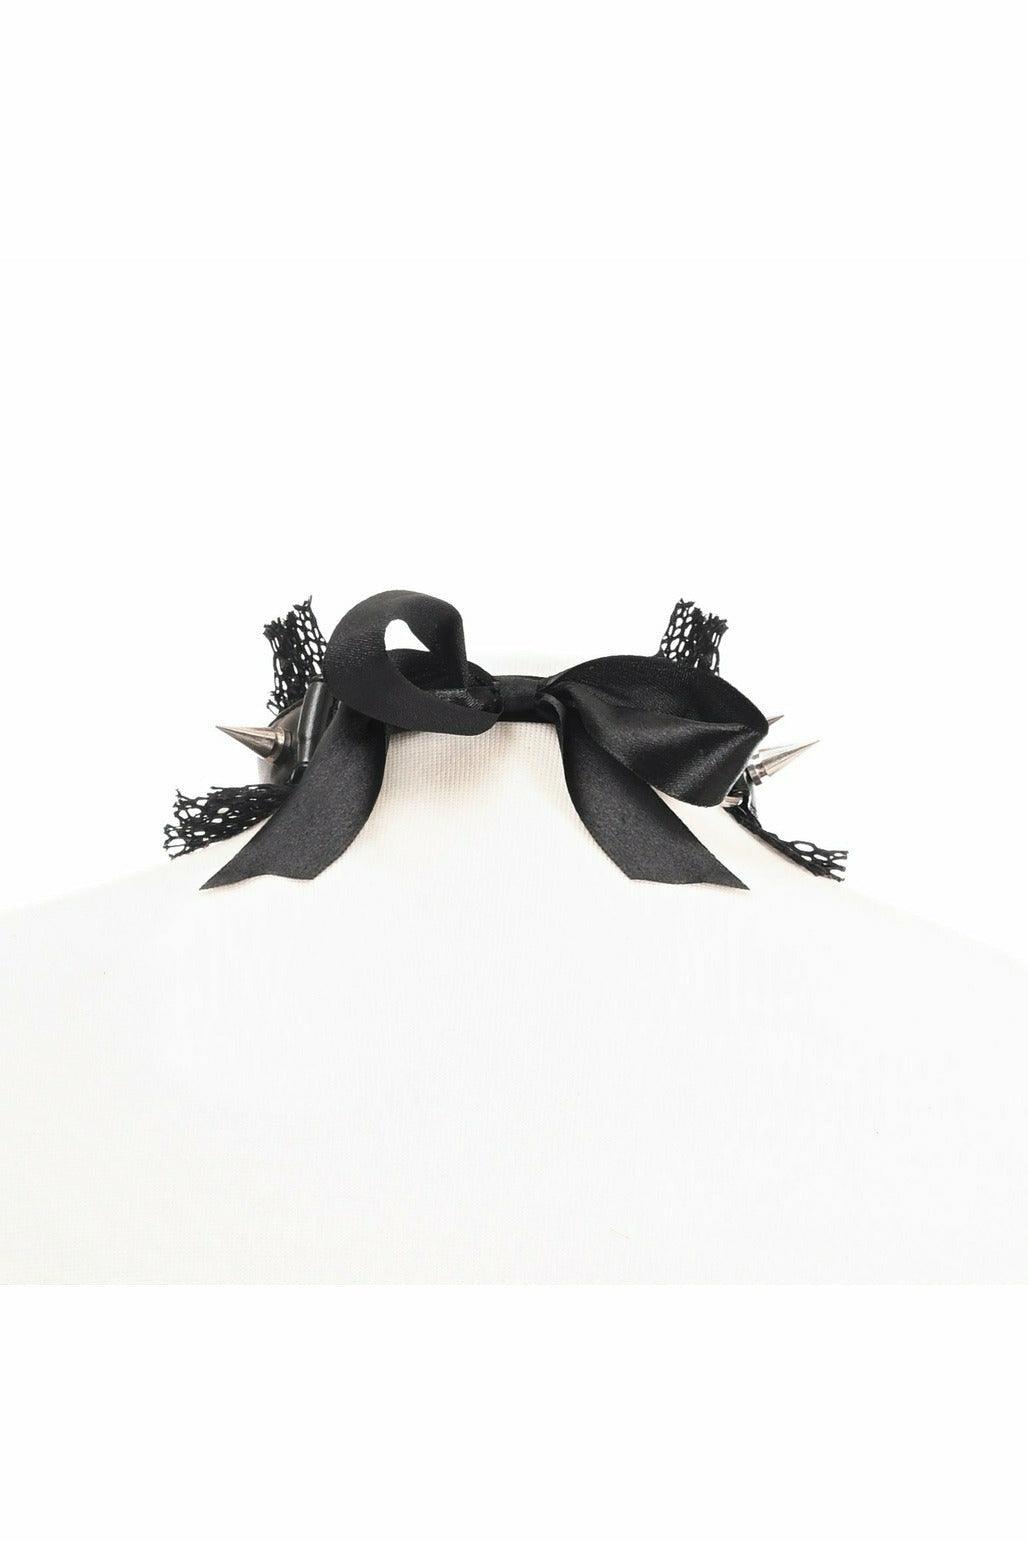 Kitten Collection Black Fishnet Spike Choker - AMIClubwear